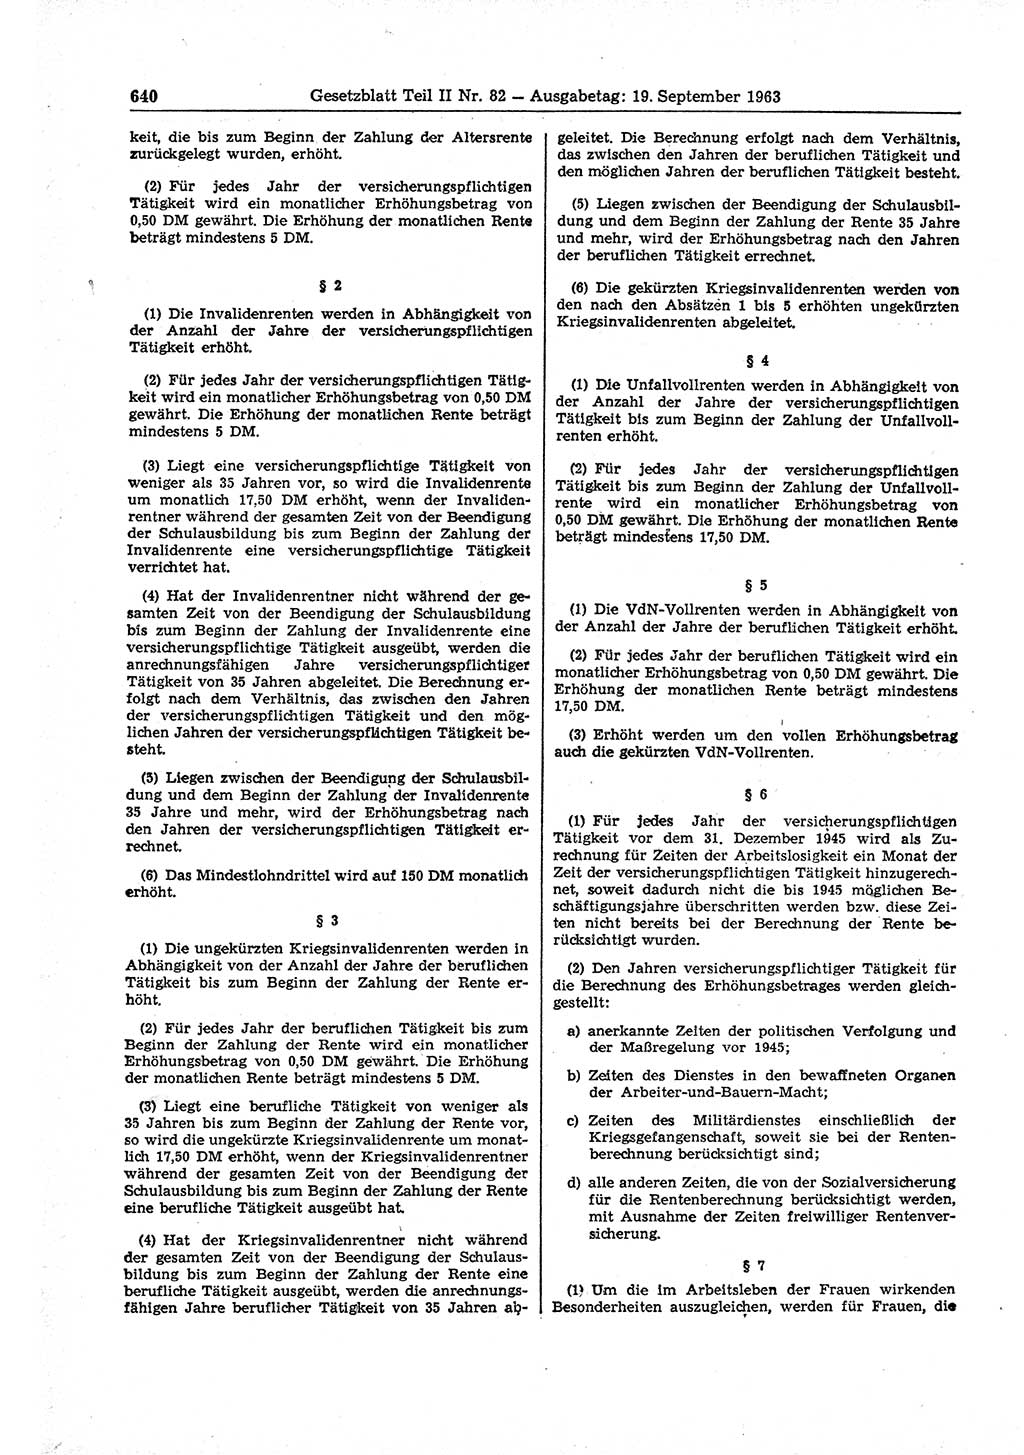 Gesetzblatt (GBl.) der Deutschen Demokratischen Republik (DDR) Teil ⅠⅠ 1963, Seite 640 (GBl. DDR ⅠⅠ 1963, S. 640)